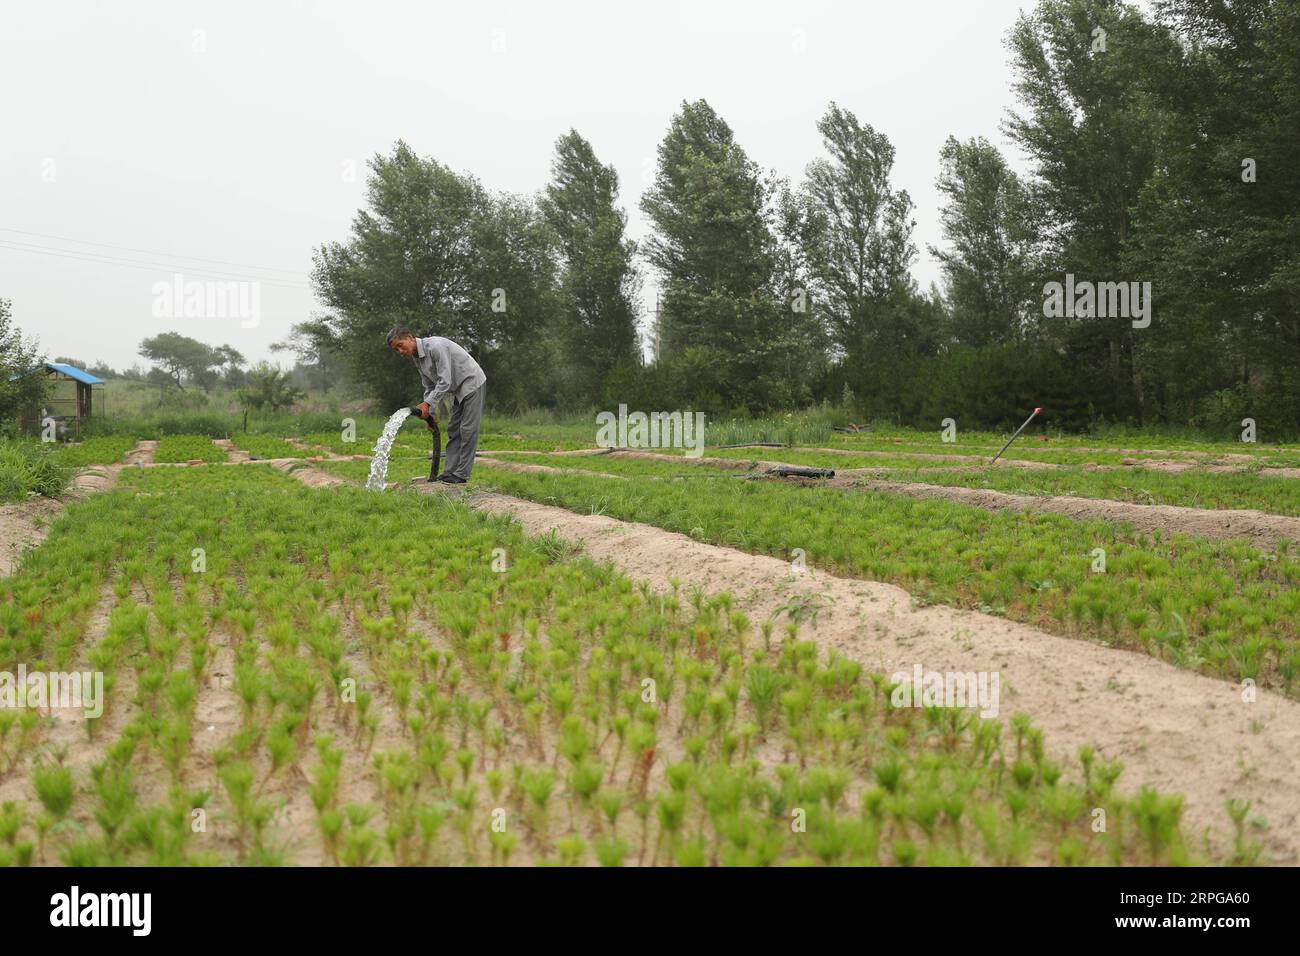 191009 -- FUXIN, 9 ottobre 2019 -- Hou Gui Waters saplings in Zhangwu County of Fuxin City, provincia di Liaoning della Cina nordorientale, 17 luglio 2019. Hou Gui, 68, è un villaggio del villaggio di Liujia, nella città di Sihecheng, nella contea di Zhangwu. Vivendo al confine meridionale della terra sabbiosa di Horqin, Hou ha piantato più di 200.000 alberi su 2.400 mu 160 ettari di terreno sabbioso negli ultimi 18 anni. Quando ero bambino, il vento fece saltare la sabbia e non riuscivo a vedere niente. Ha detto Hou Gui. Al fine di proteggere la sua patria, Hou Gui iniziò l'imboschimento nel 2001. Negli ultimi anni, con il rafforzamento dei dirigenti governativi Foto Stock